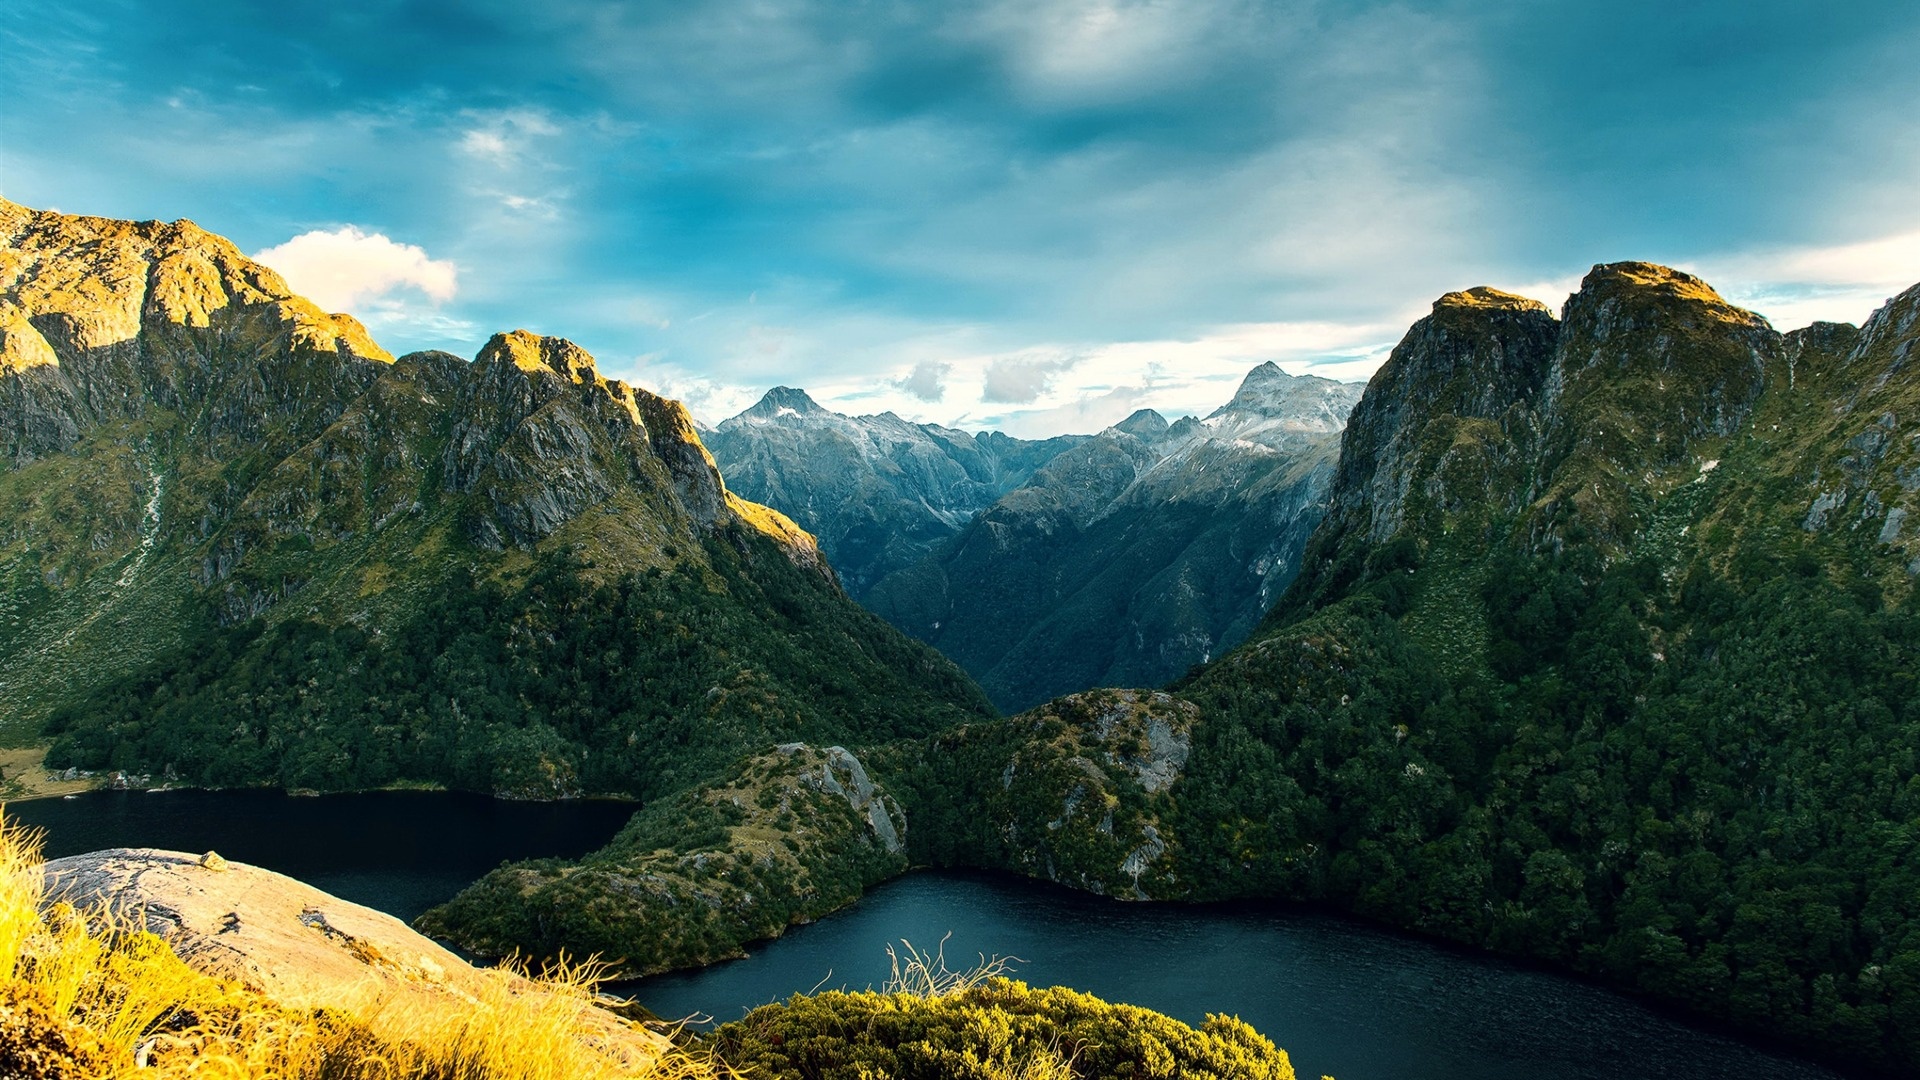 Fiordland National Park, Appreciating nature, HD wallpaper, Desktop background, 1920x1080 Full HD Desktop